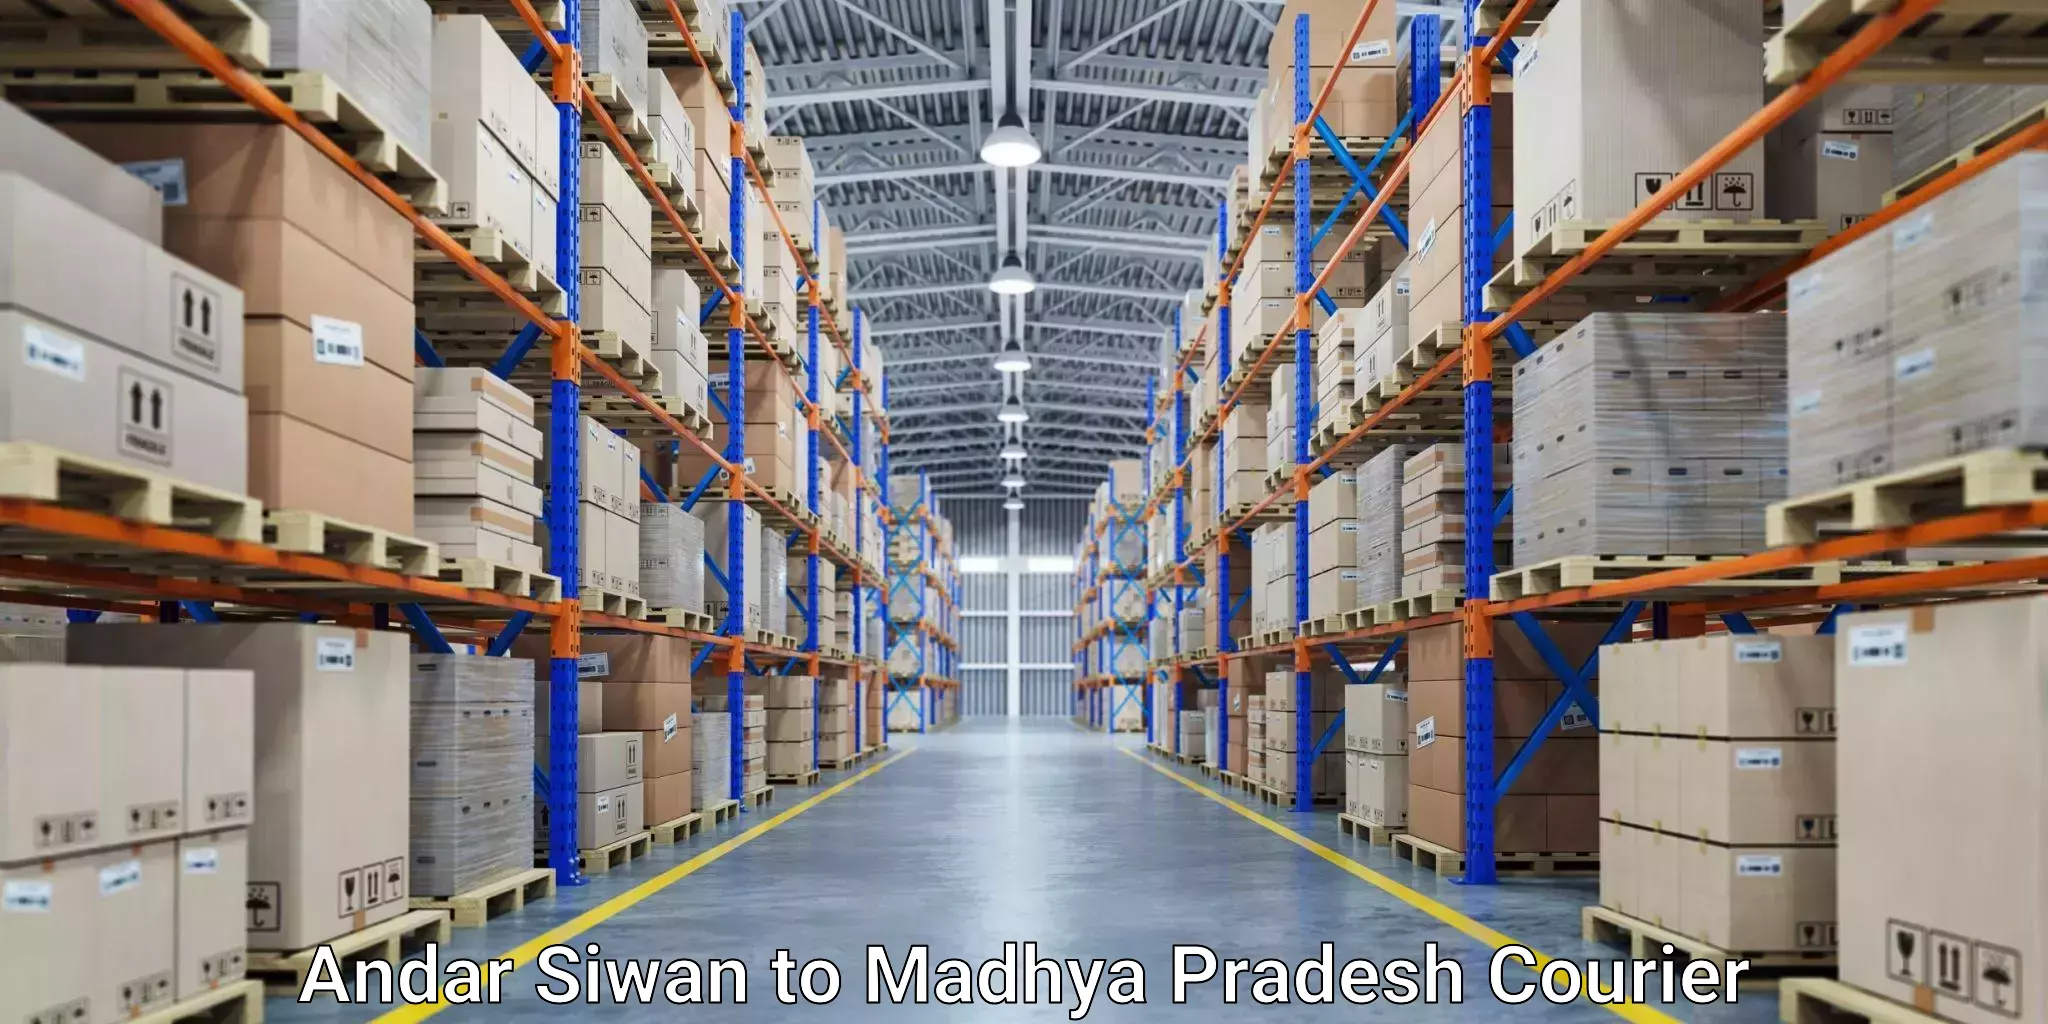 Efficient order fulfillment Andar Siwan to Niwari